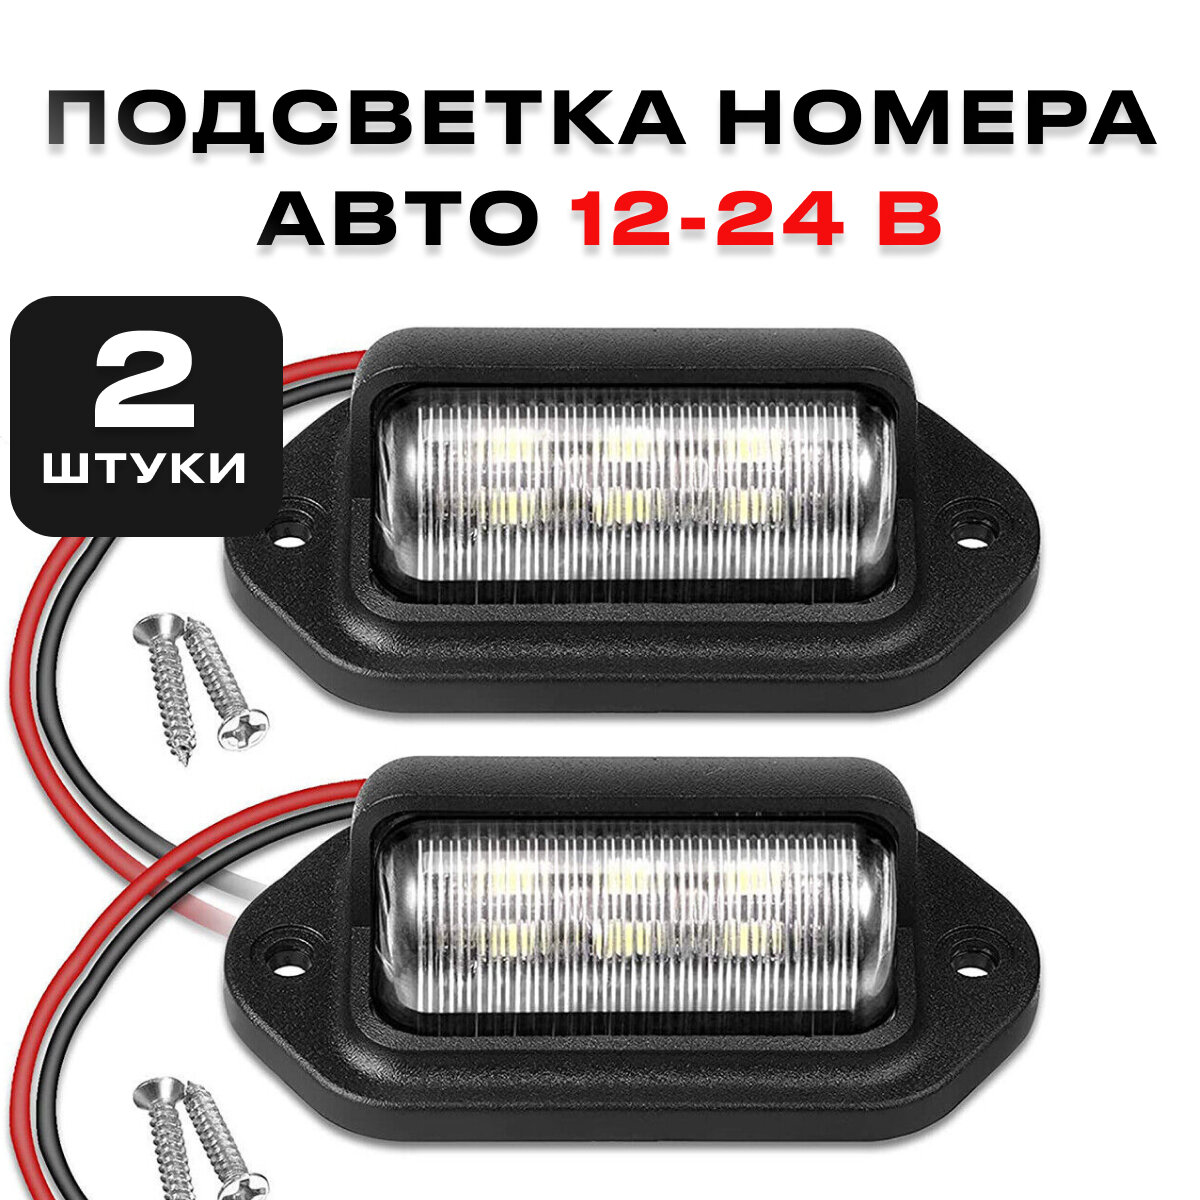 Подсветка номера для автомобиля светодиодная универсальная 12-24 В комплект из 2 штук